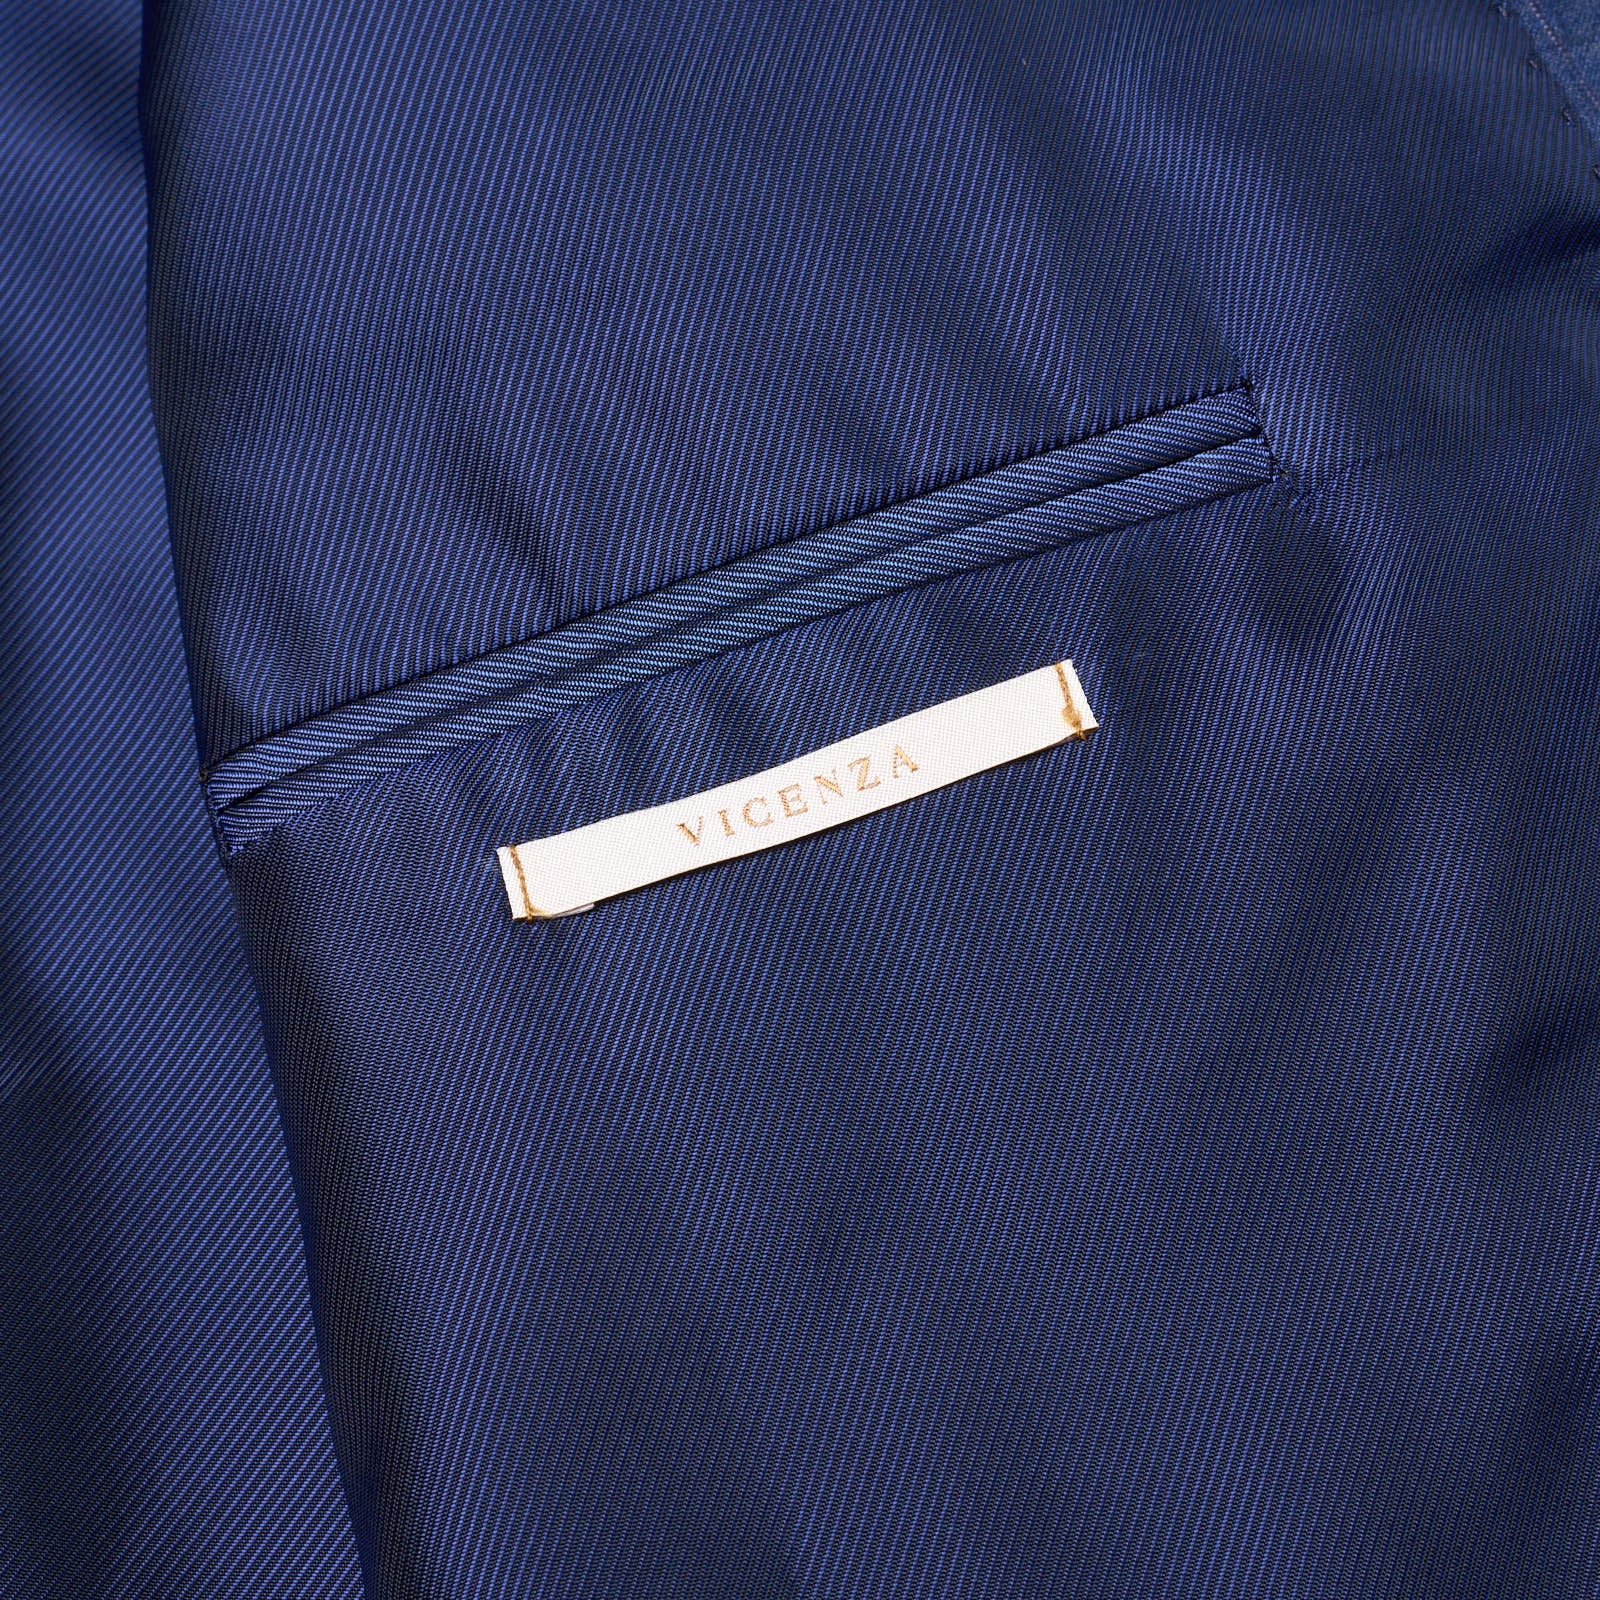 PAL ZILERI Royal Blue Striped Virgin Wool Suit EU 54 NEW US 44 Slim Fit